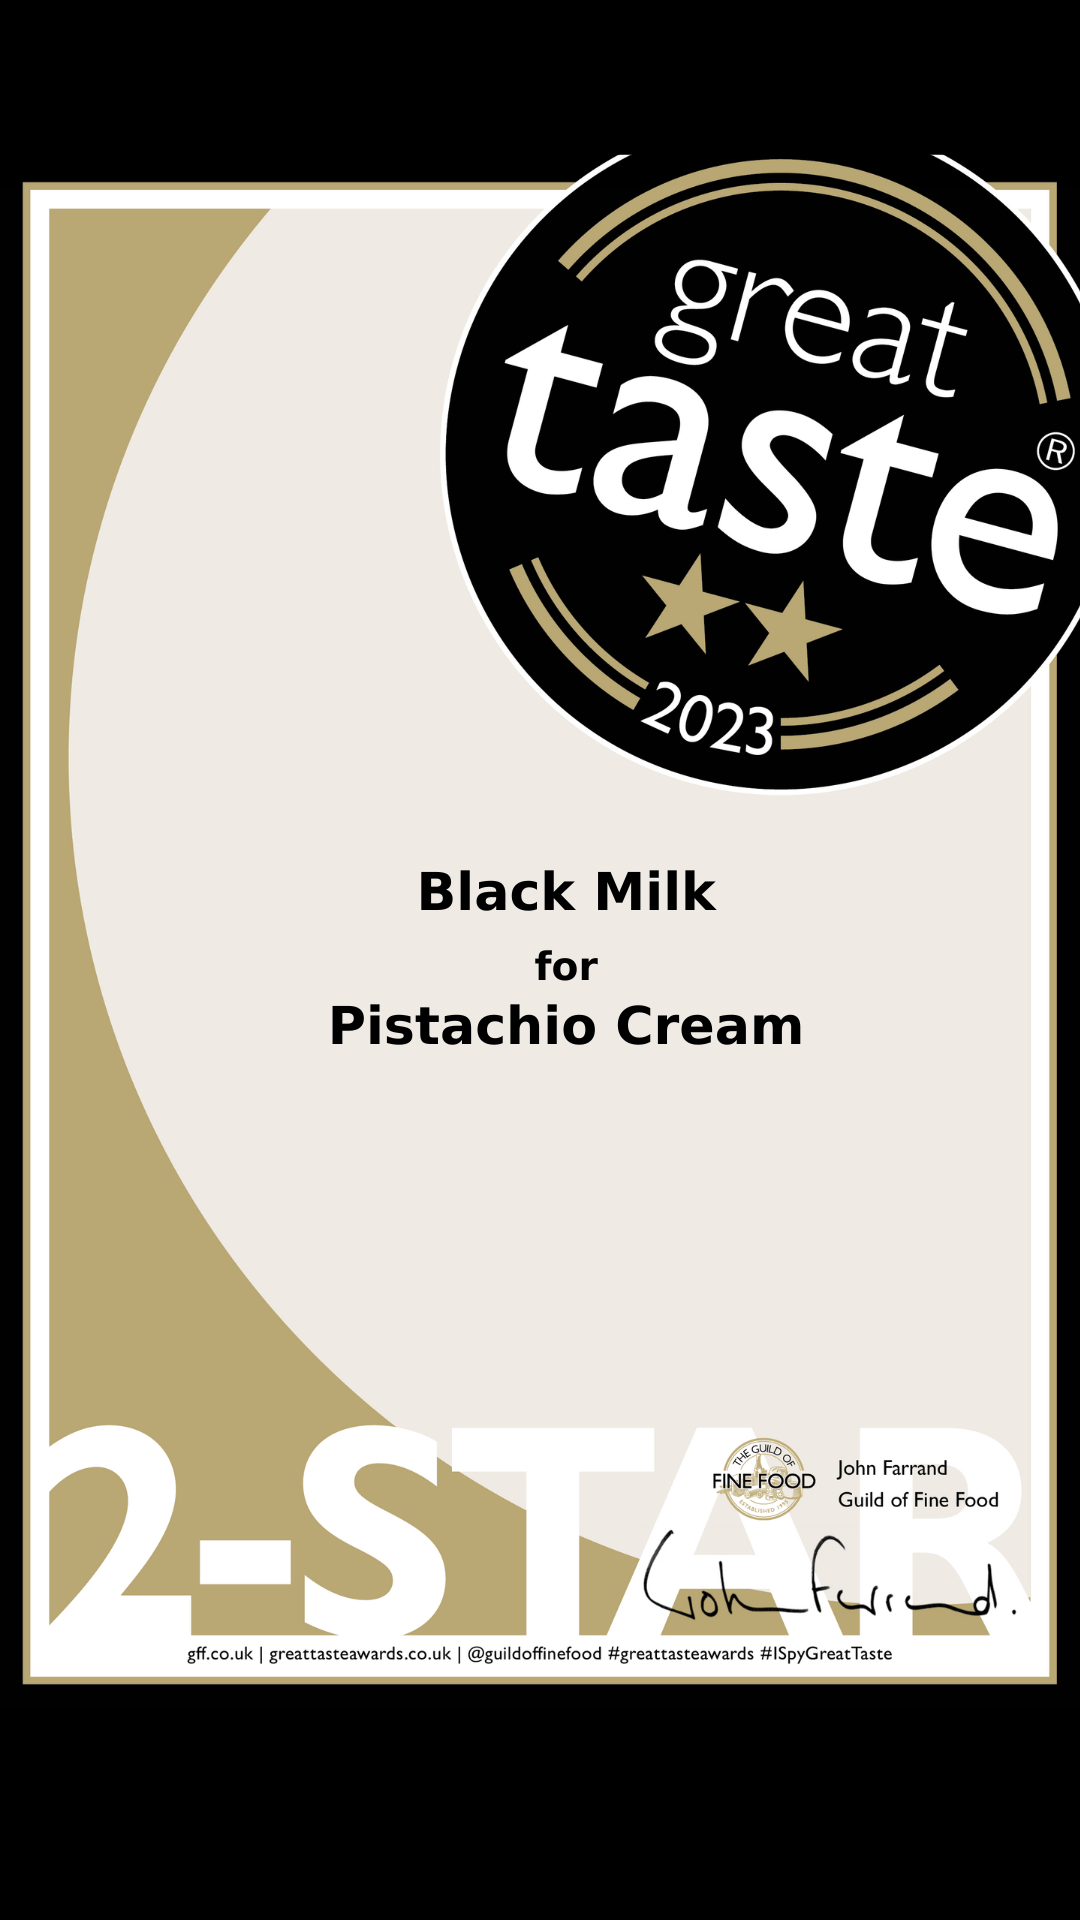 Pistachio Cream 230g ⭐⭐